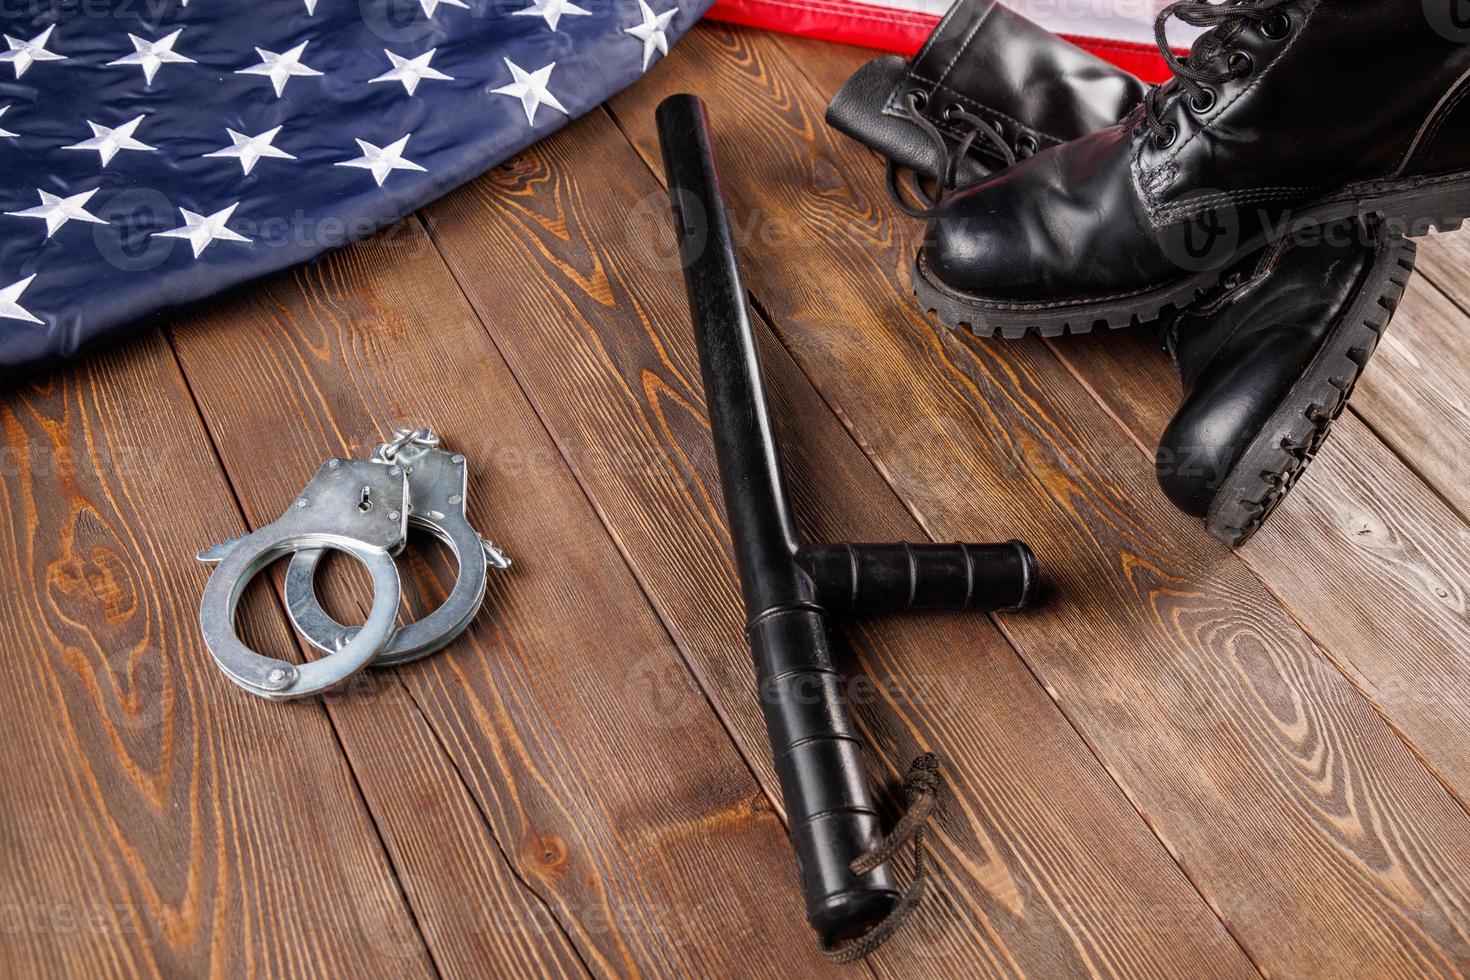 esposas de metal plateado, botines negros y bastón de policía cerca de la bandera estadounidense en la superficie de madera foto